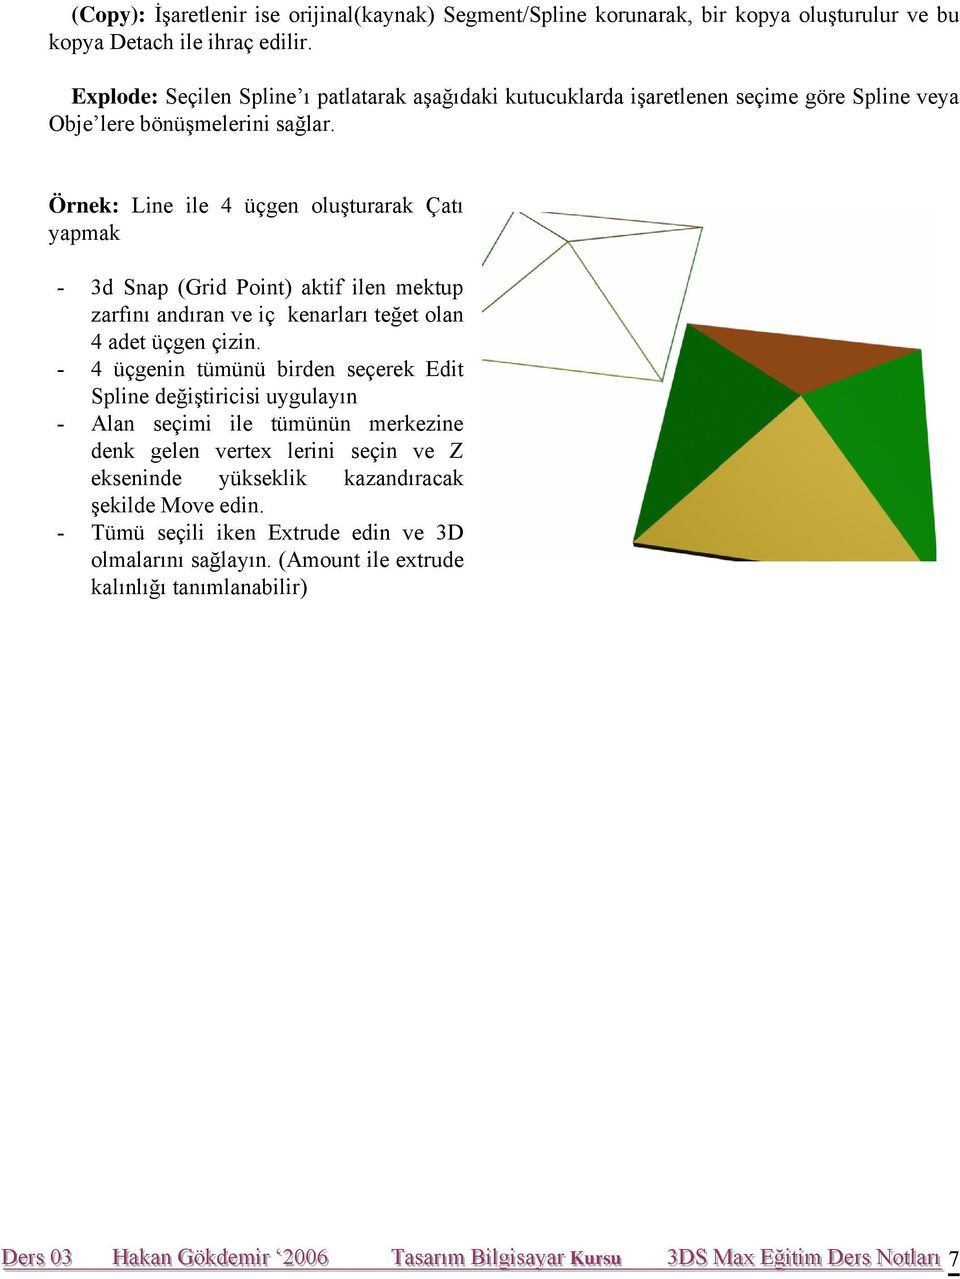 Örnek: Line ile 4 üçgen oluşturarak Çatı yapmak - 3d Snap (Grid Point) aktif ilen mektup zarfını andıran ve iç kenarları teğet olan 4 adet üçgen çizin.